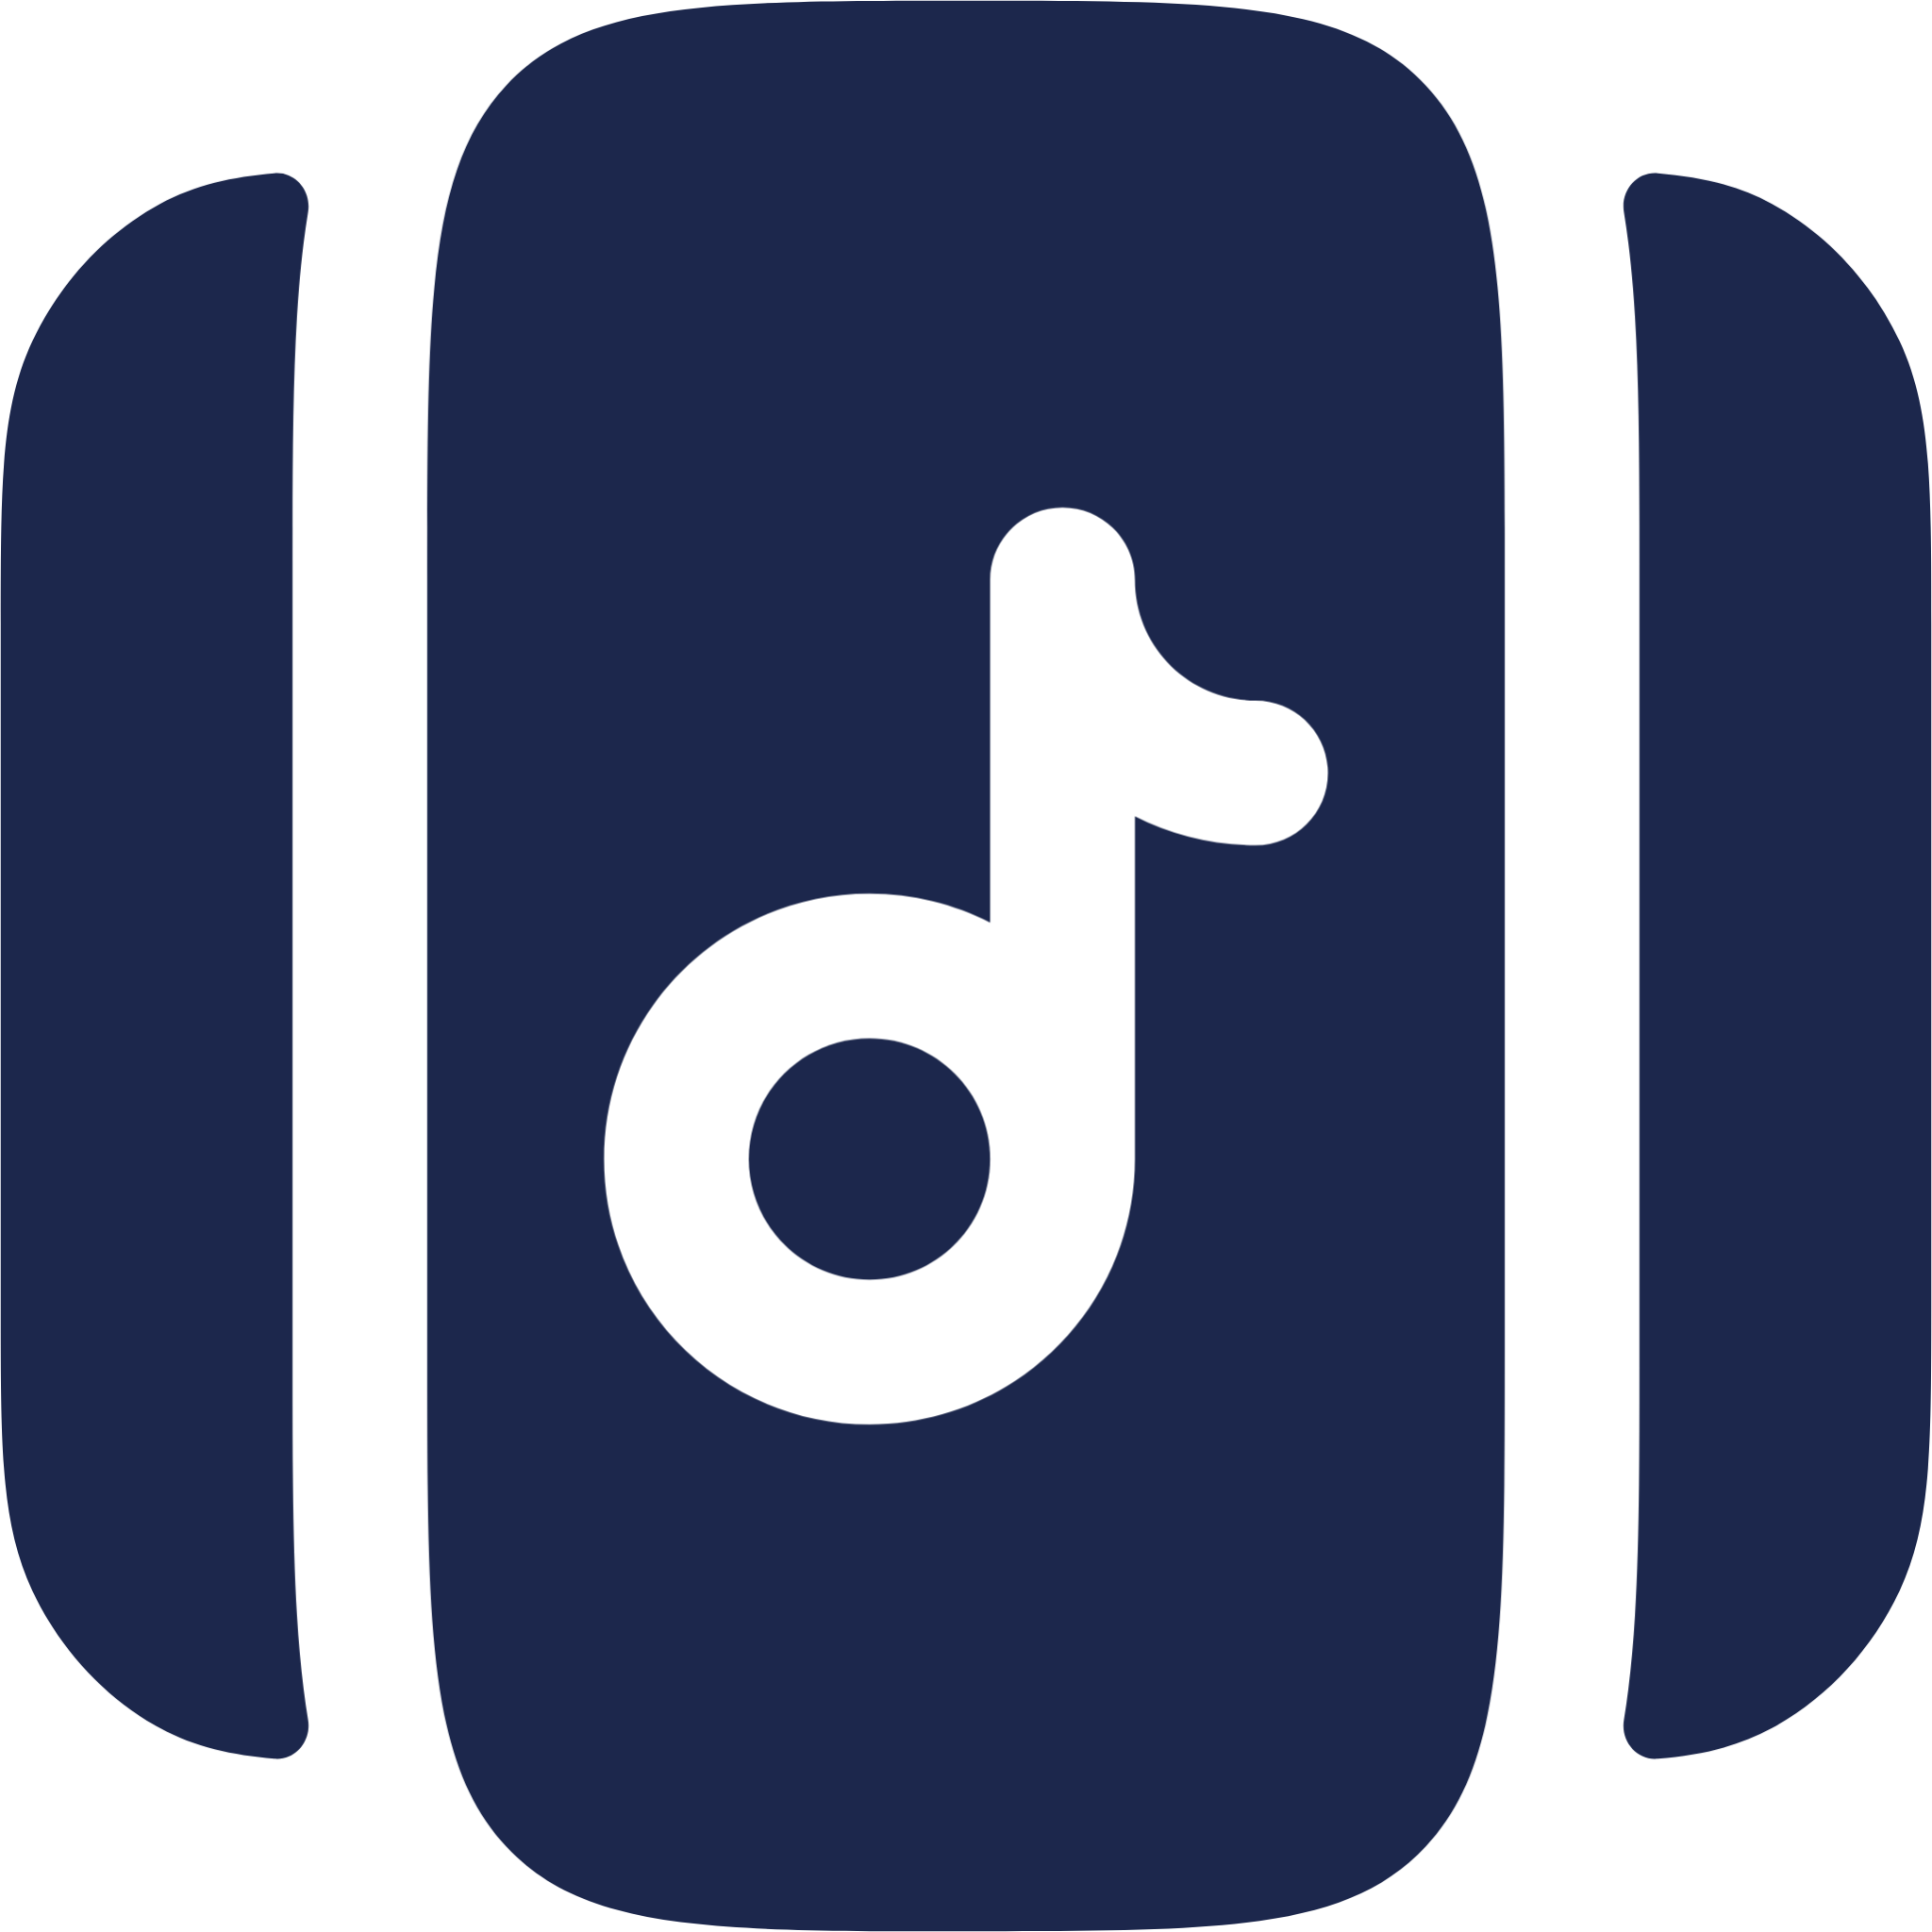 Music Note Slider icon